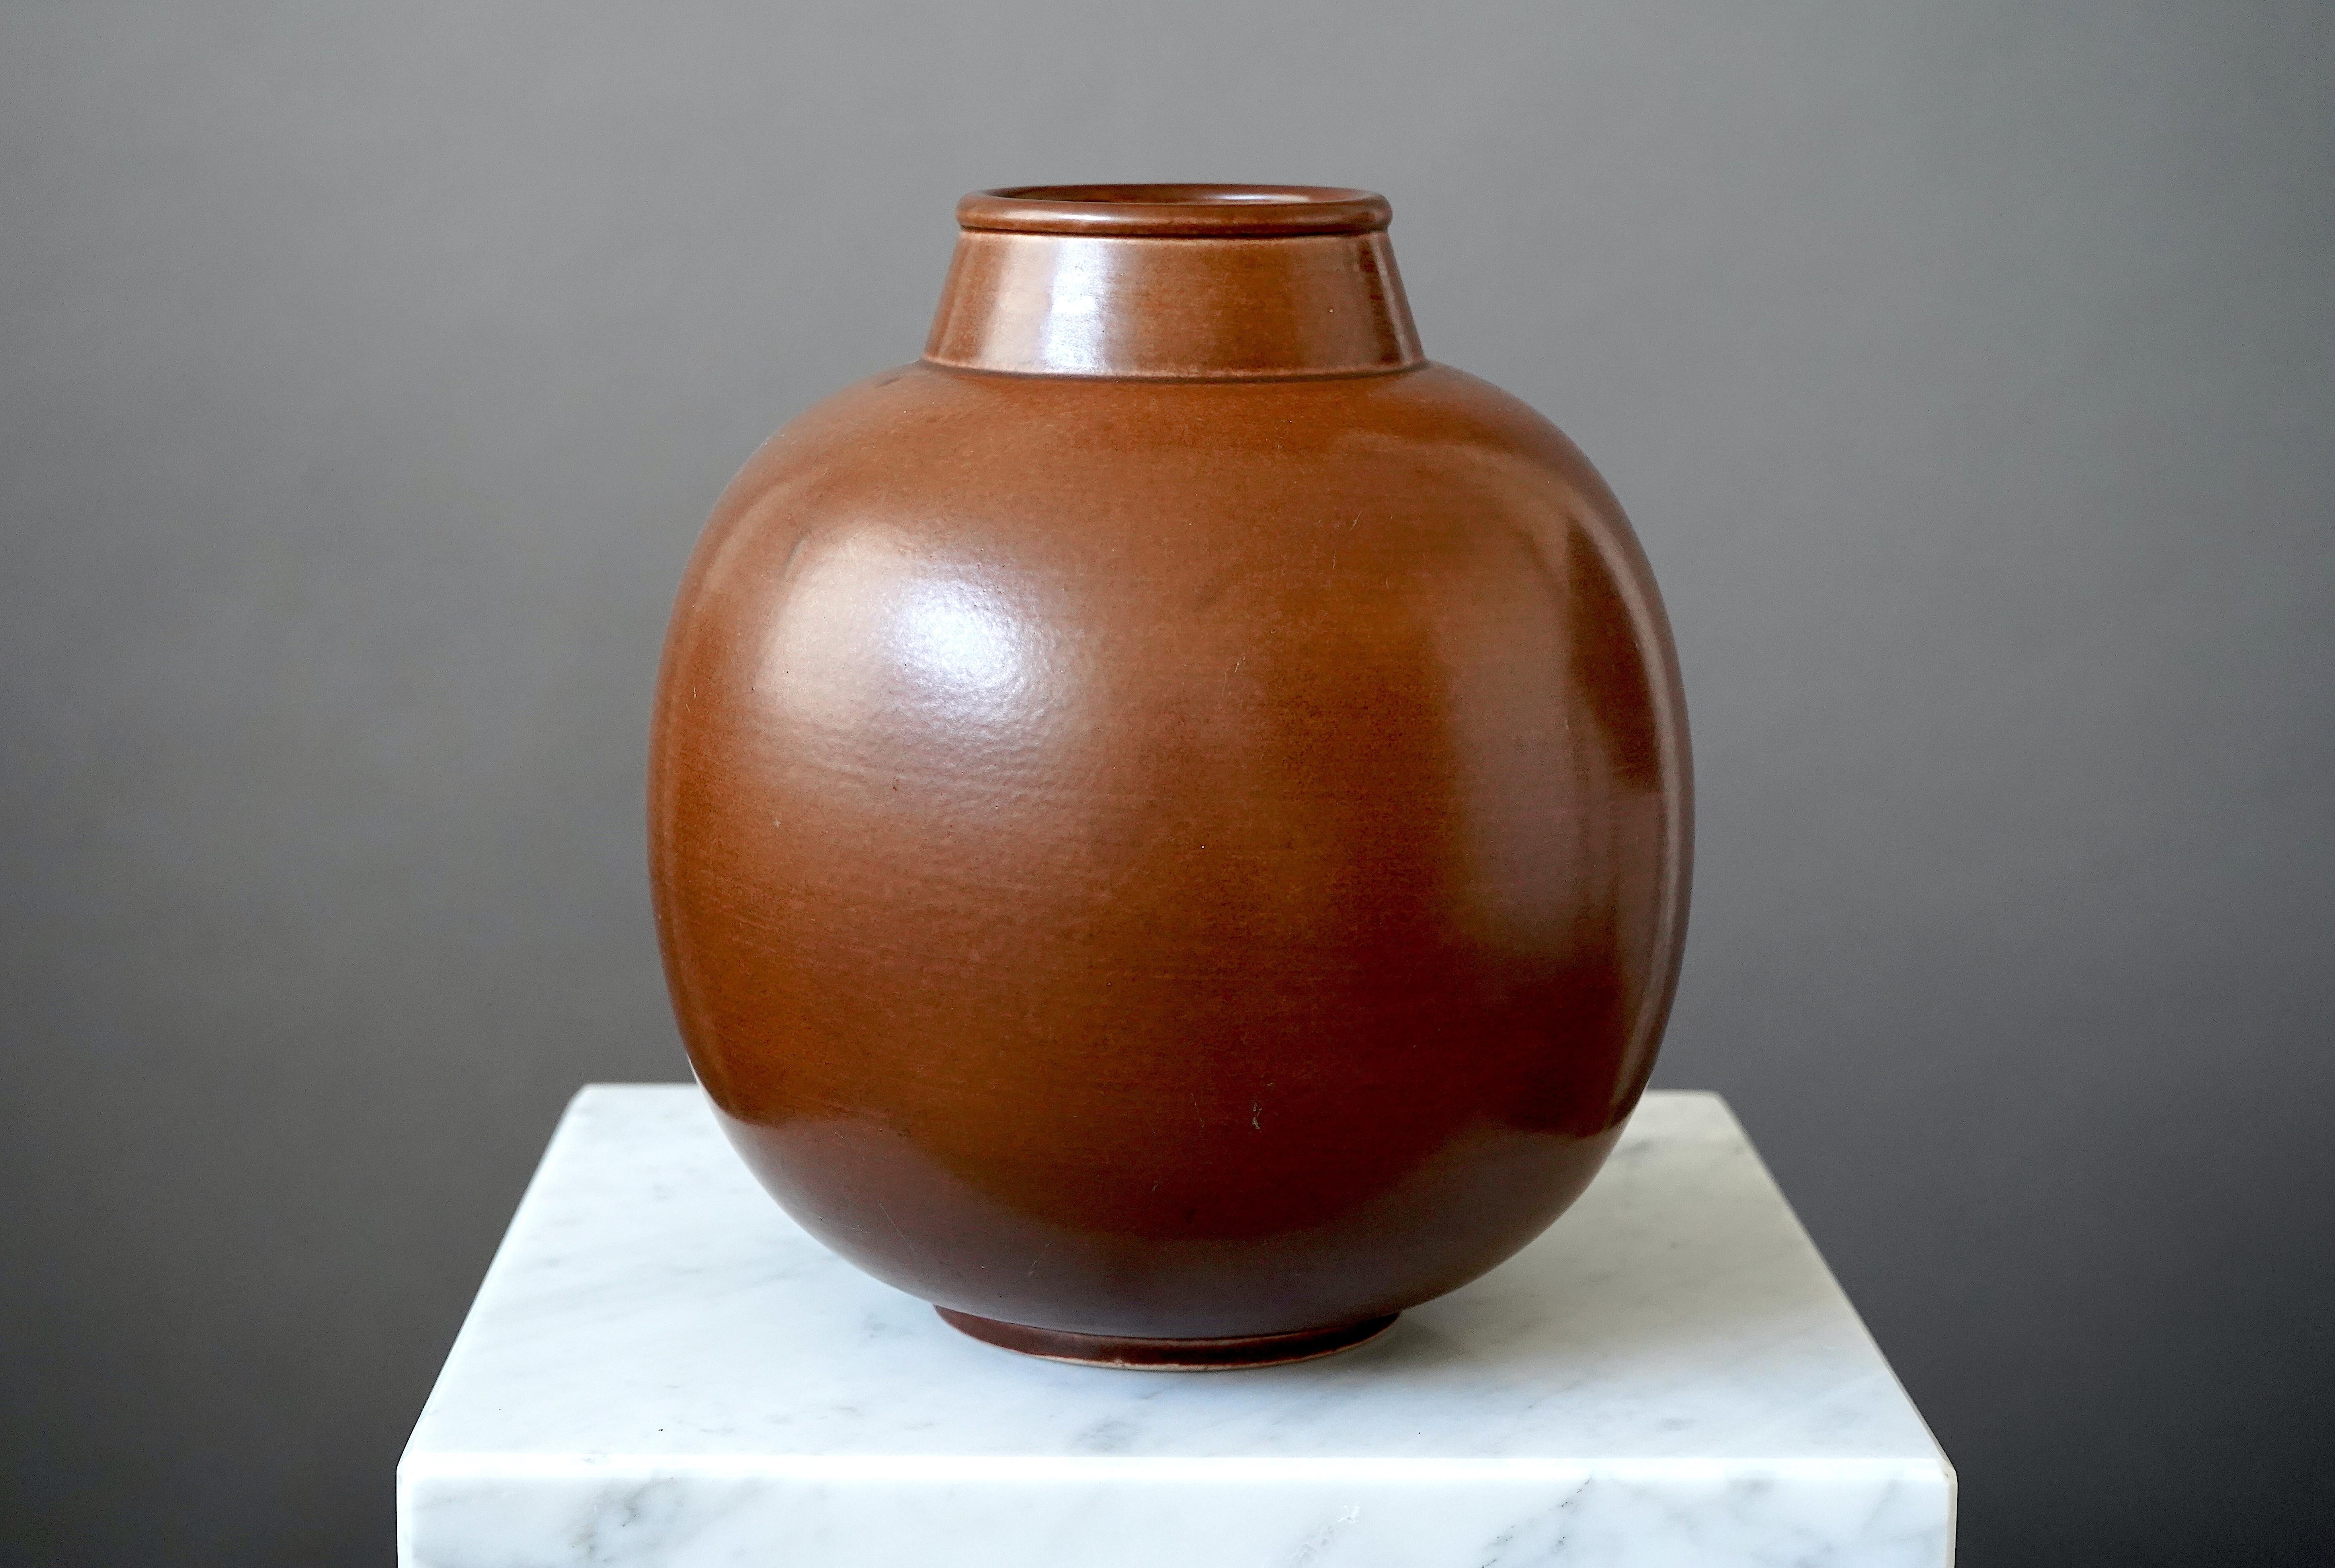 Schöne und seltene Vase aus Steingut, entworfen von Gertrud Lönegren.
Dieses Studio-Stück wurde zwischen 1936-41 in Rorstrand in Schweden geschaffen.

Ausgezeichneter Zustand. Eingedrückt 'Rörstrand / Lönegren / SCHWEDEN / L 223 /